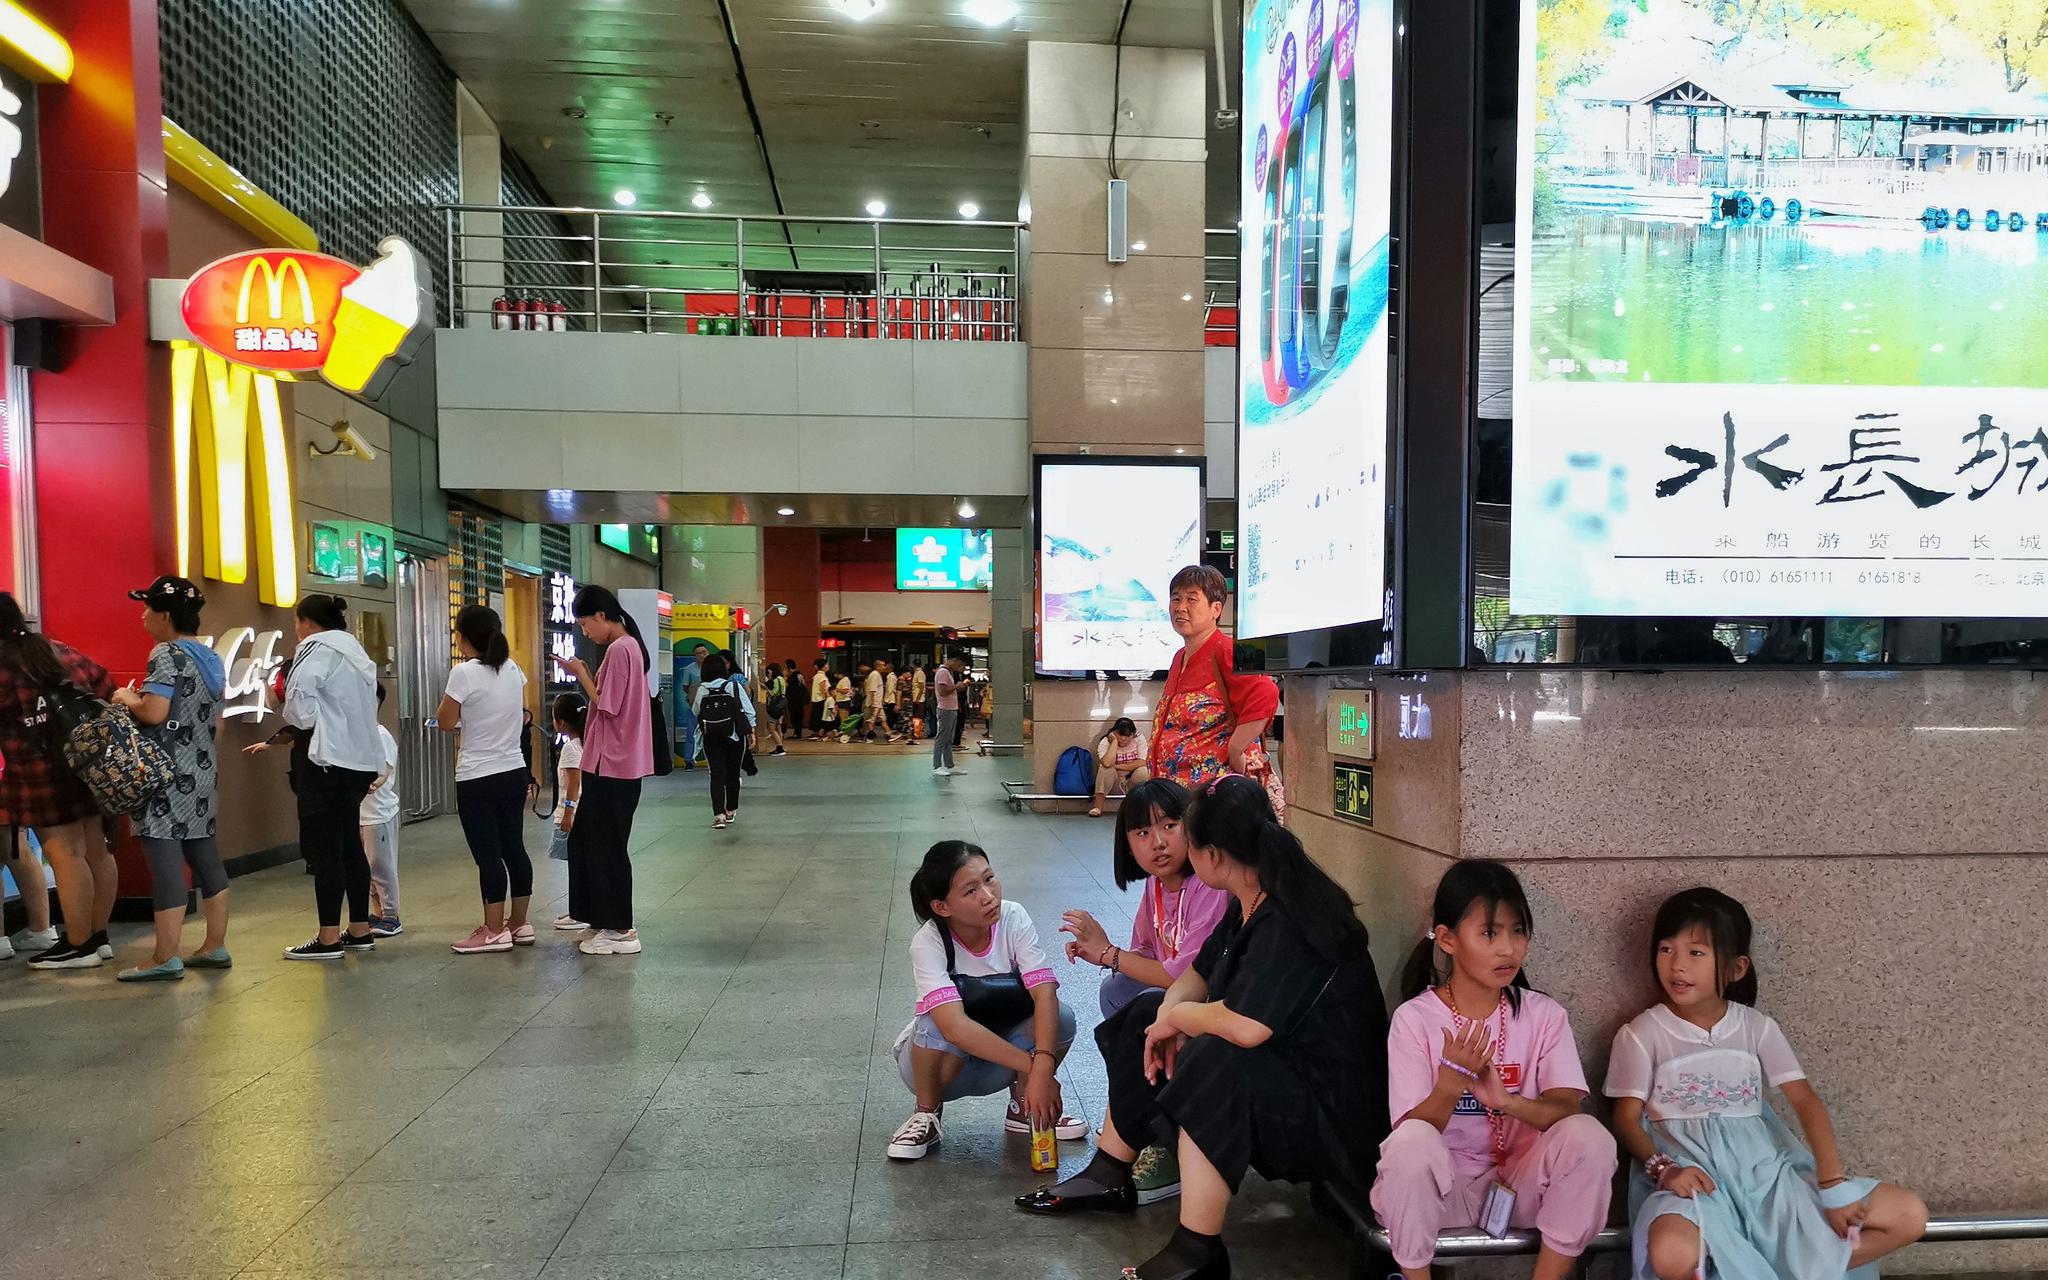 东直门枢纽站商业设施林立，却没有可供乘客歇脚的免费休息区。摄影/新京报记者 吴江